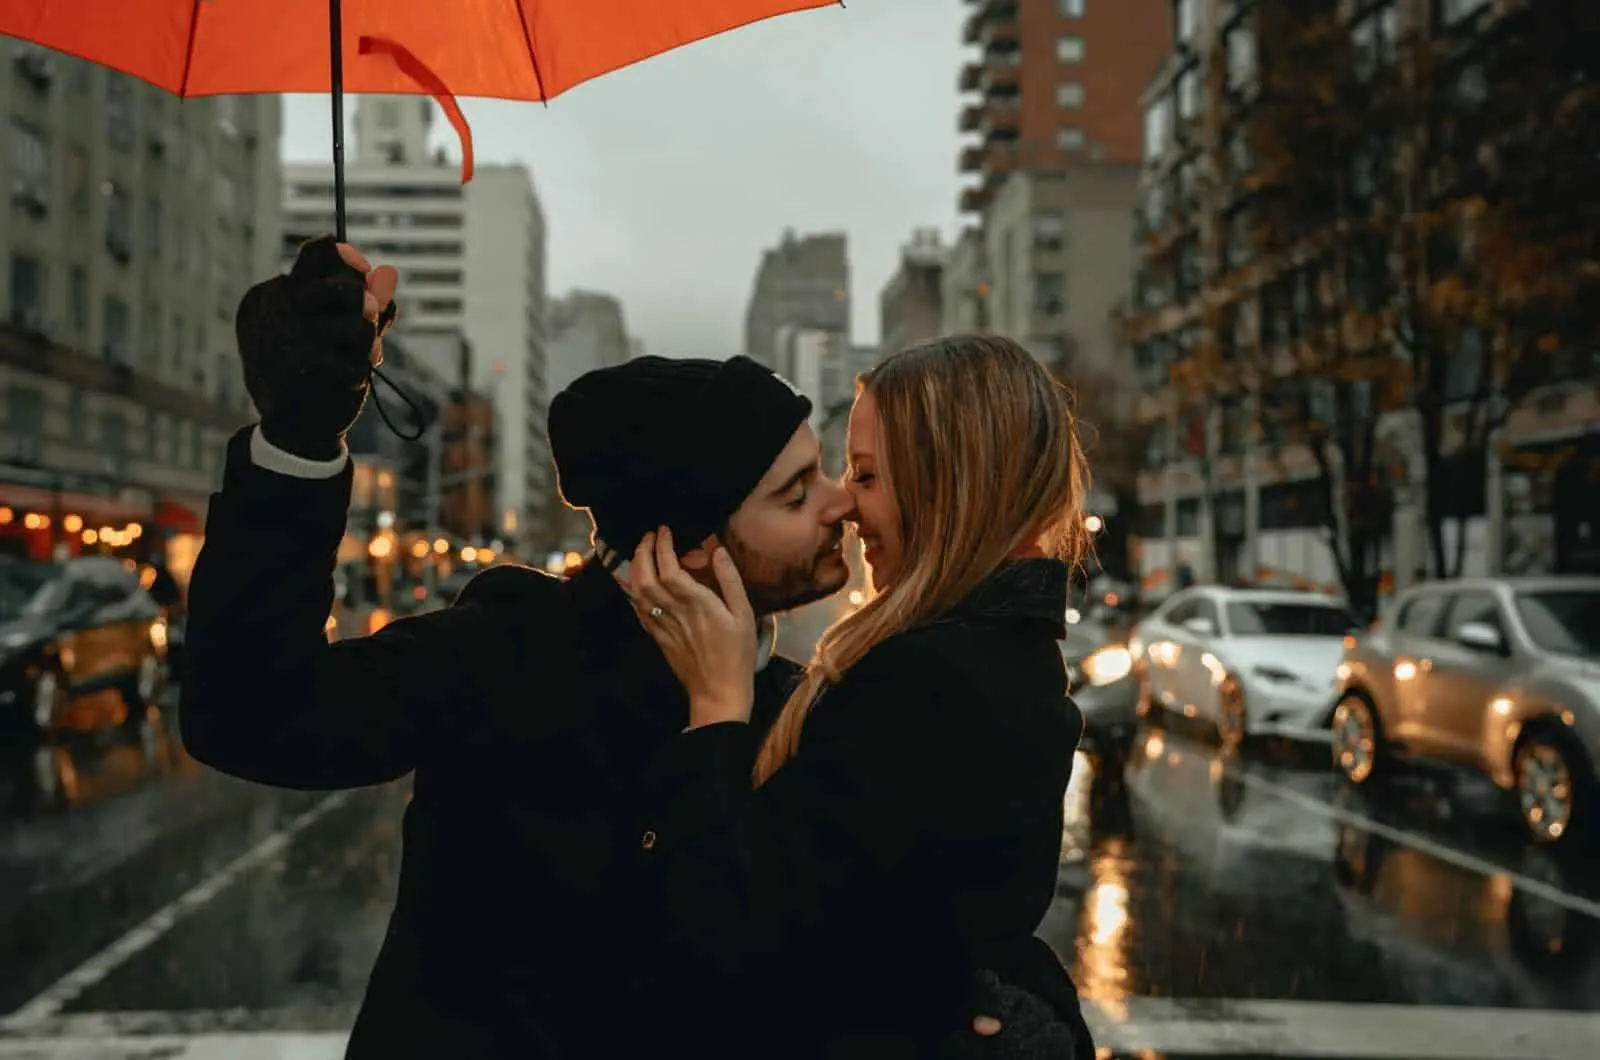 Paar küssen sich, während Mann einen Regenschirm hält